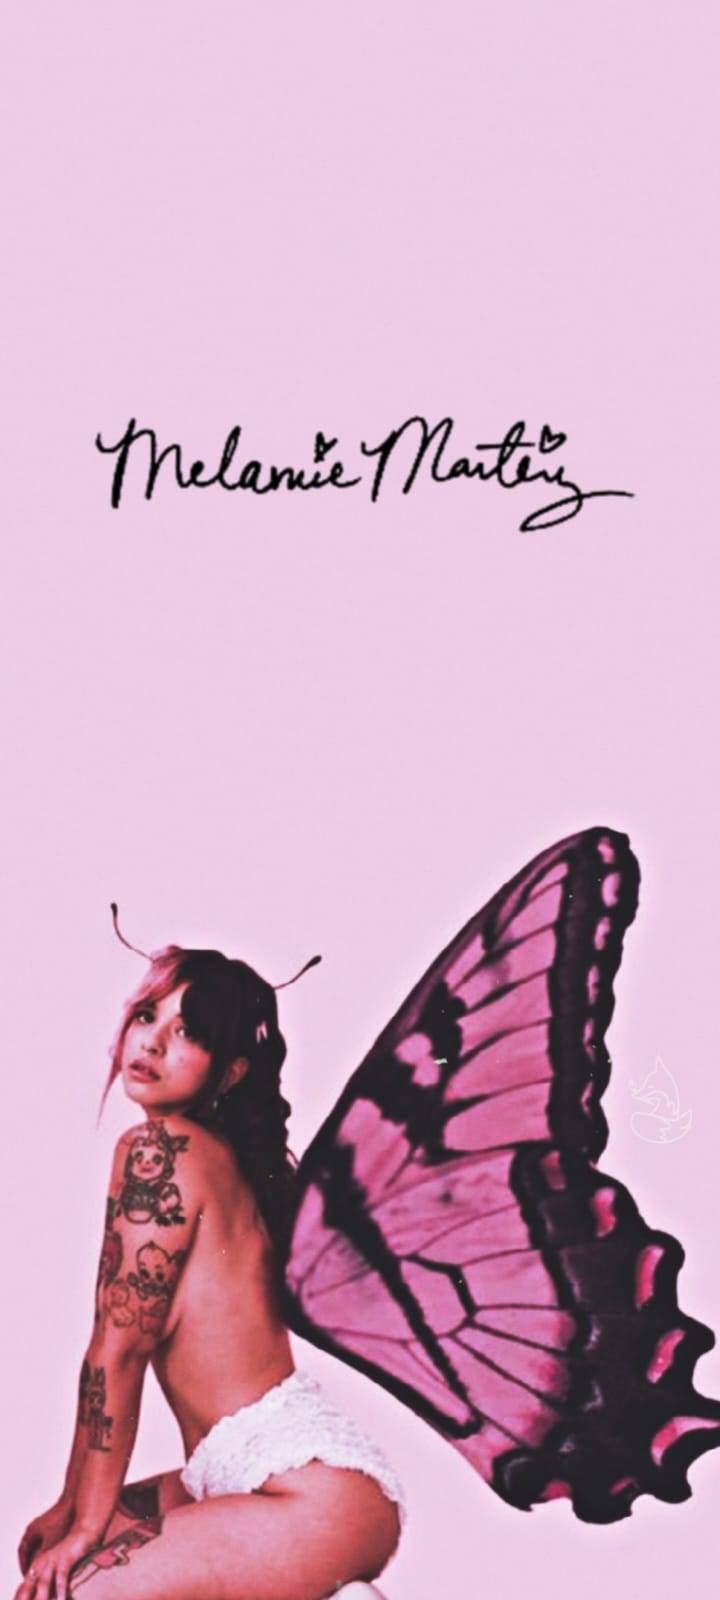 Wallpaper of Melanie Martinez with a butterfly - Melanie Martinez